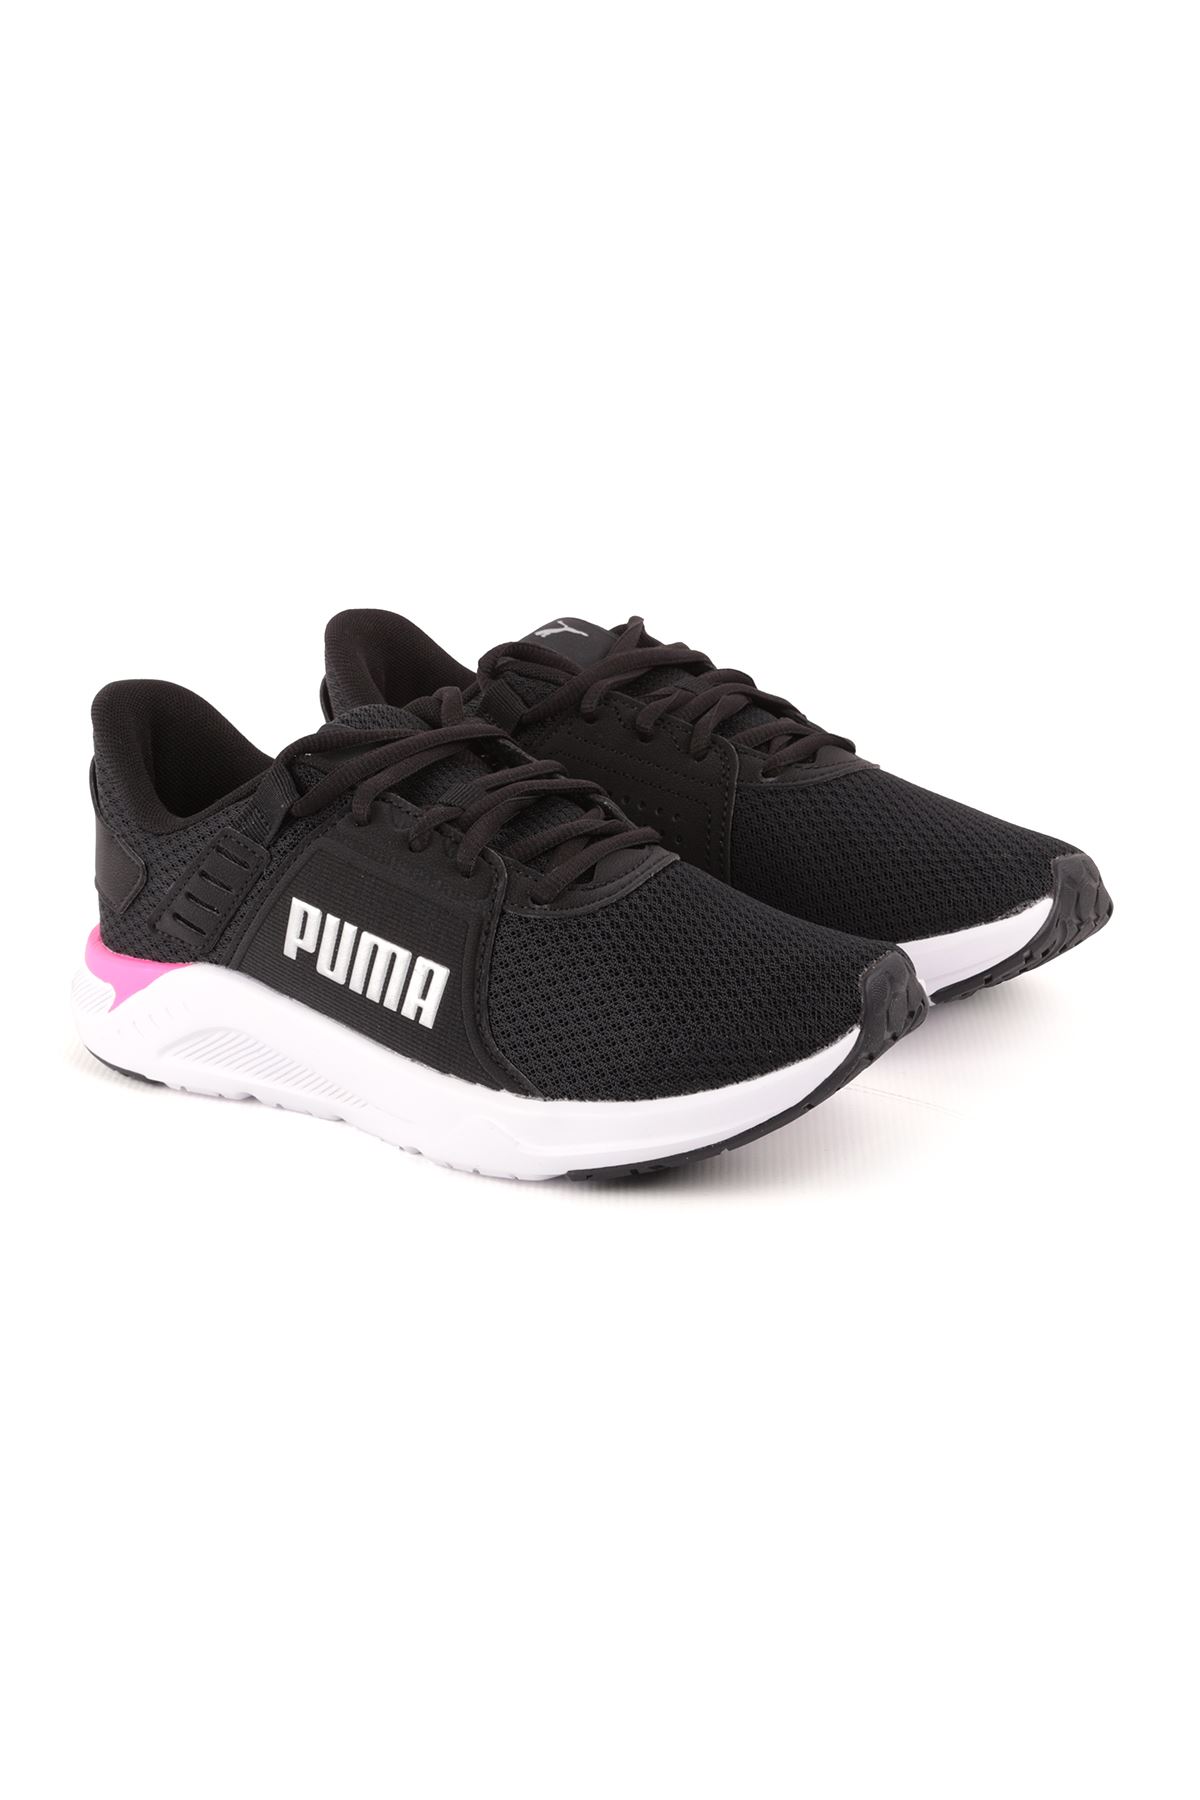 Puma Ftr Connect Siyah Kadın Spor Ayakkabı 